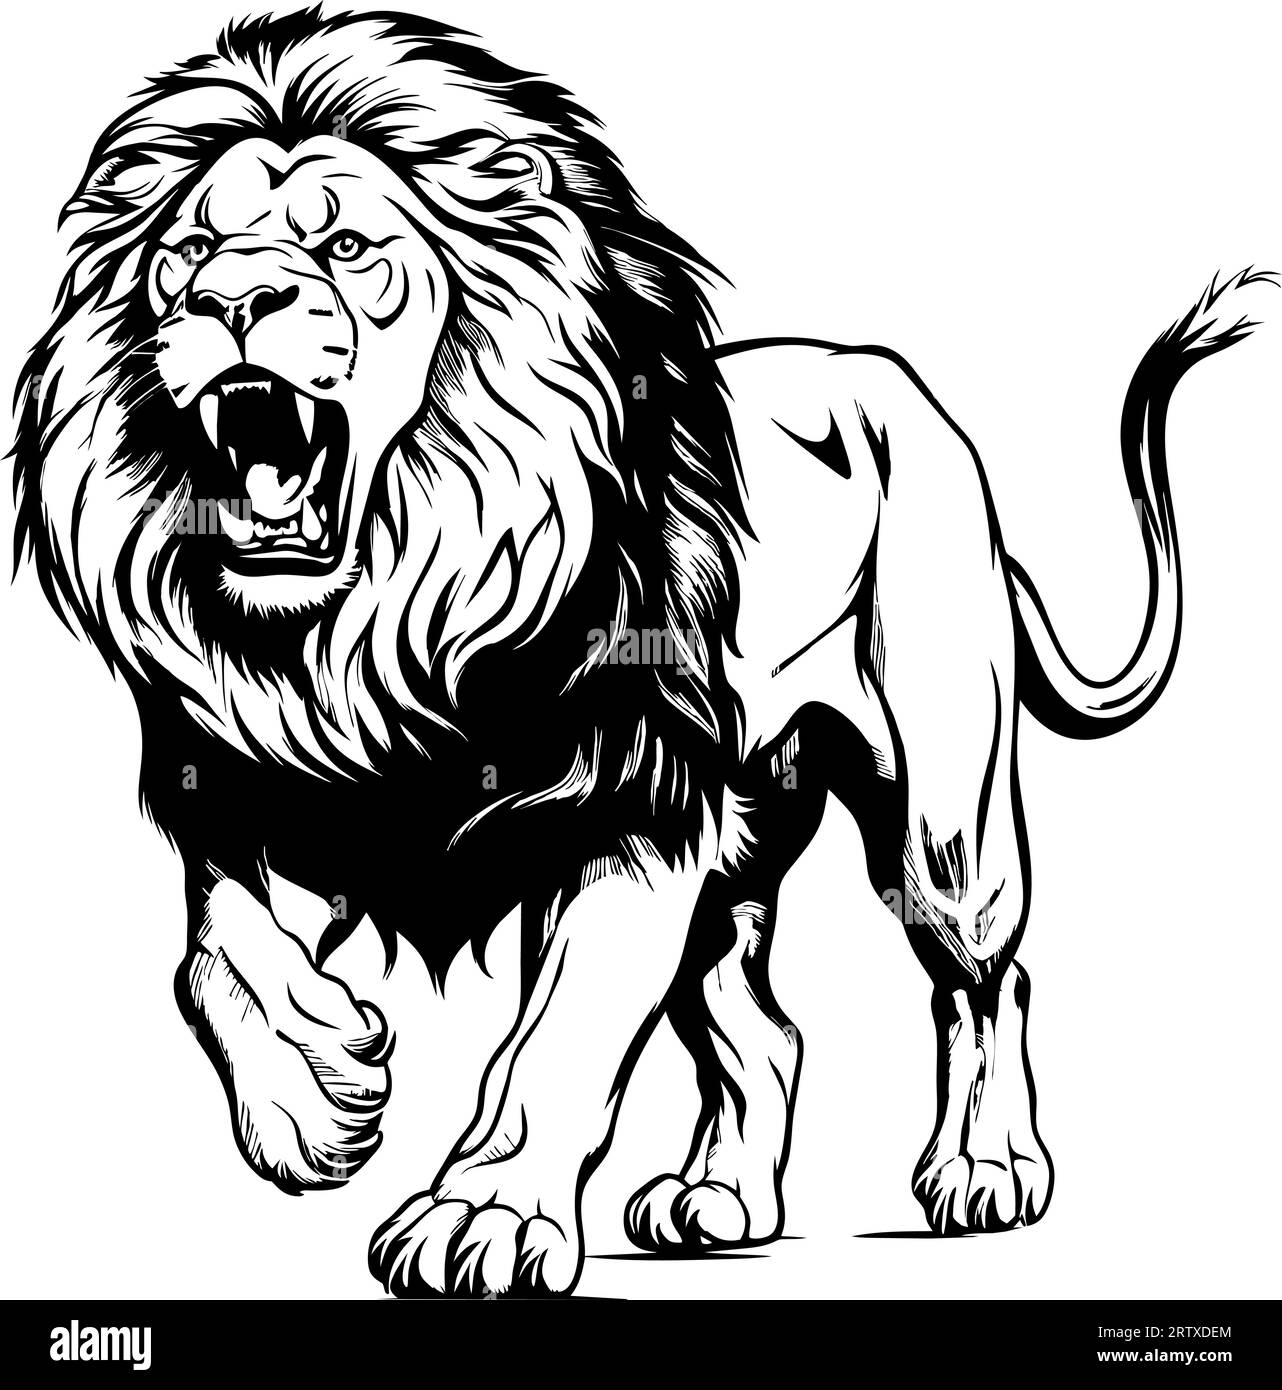 Incisione vintage, leone isolato, king set illustrativo, schizzo a inchiostro. Africa sfondo di gatto selvatico disegno della silhouette di animale. Vettore disegnato a mano in bianco e nero Illustrazione Vettoriale